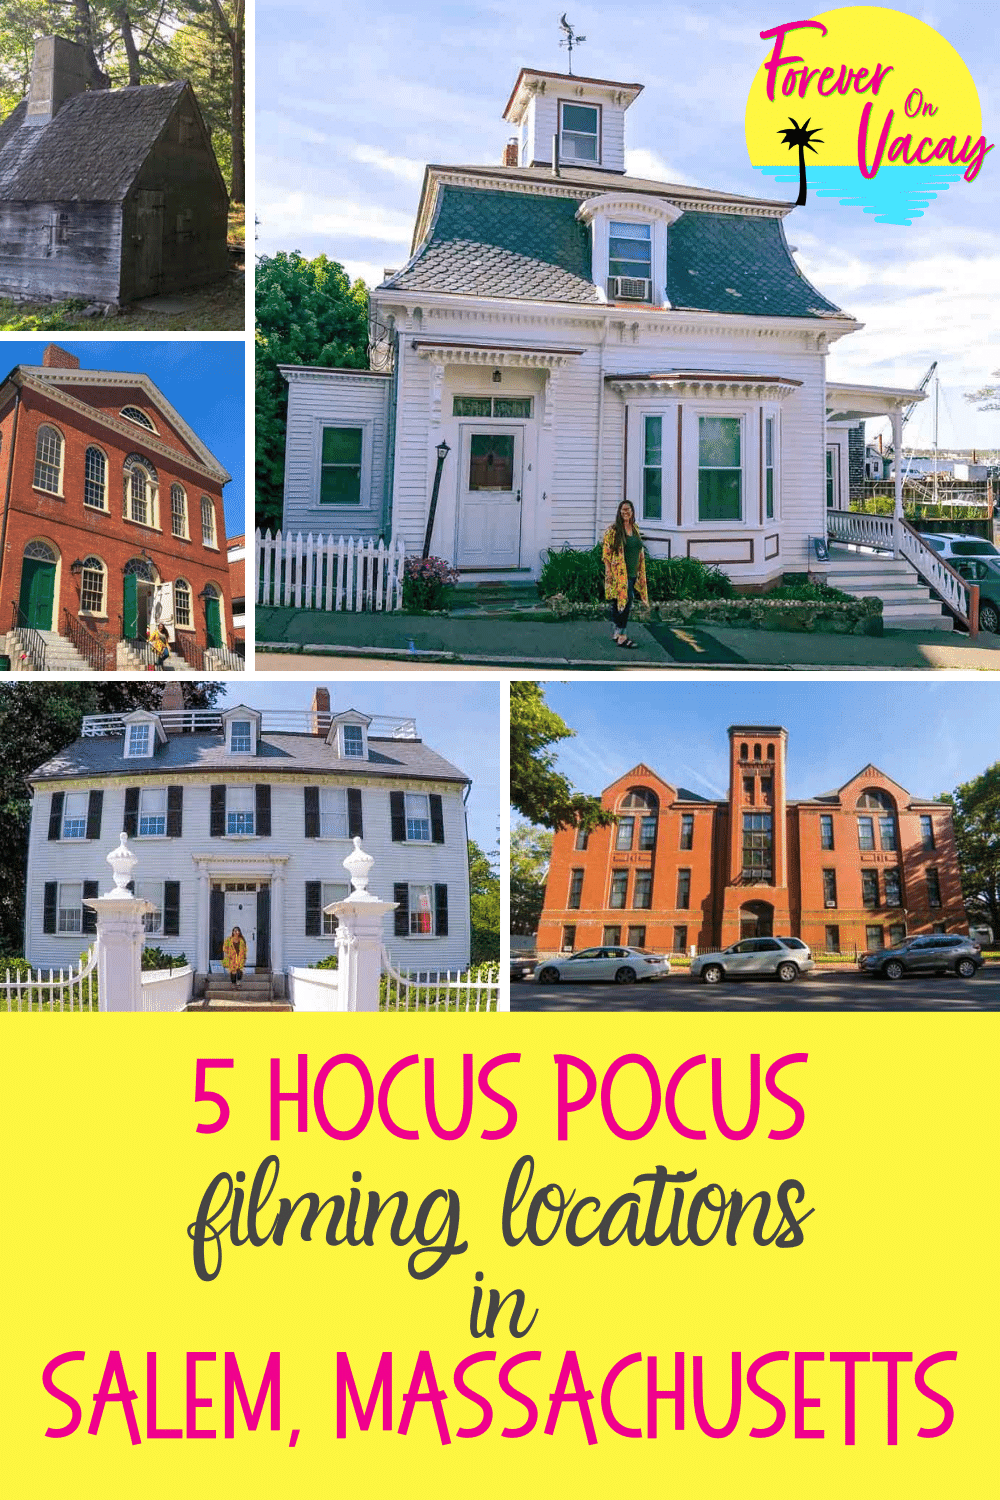 Pin this: Hocus Pocus Filming Locations in Salem, Massachusetts